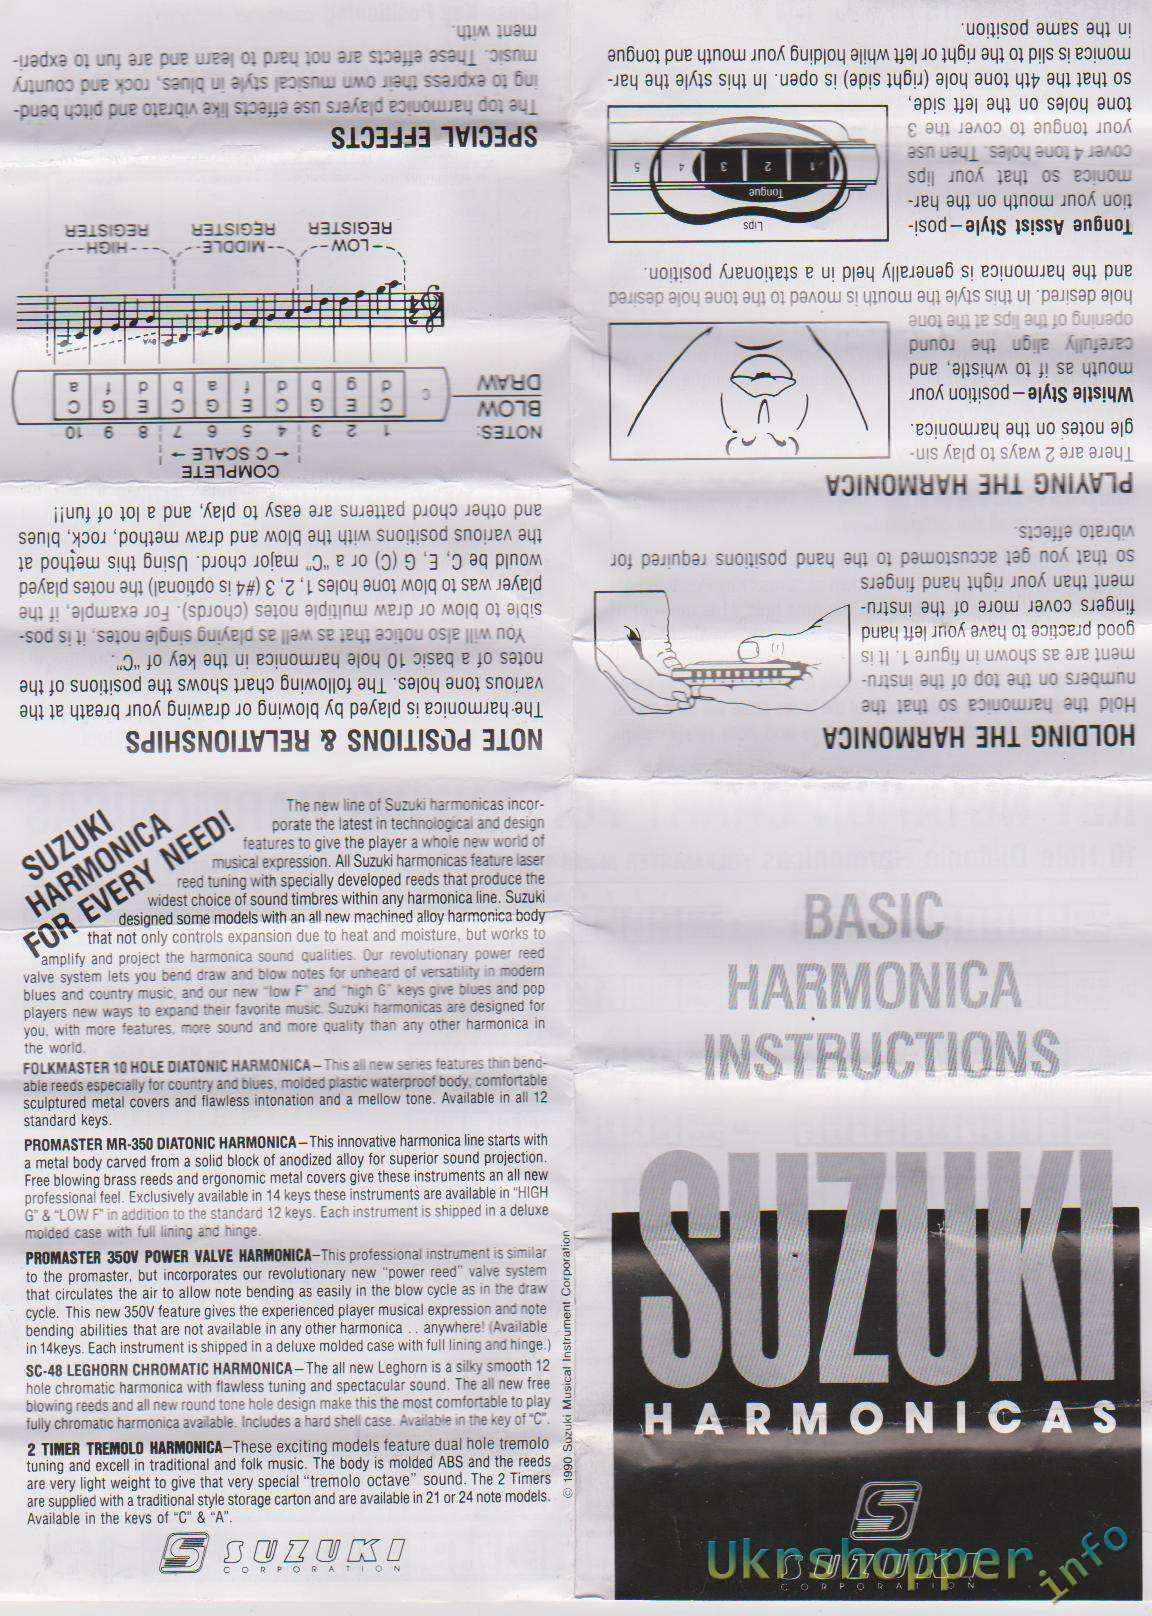 Banggood: Музыкант с гармошкой, поиграй немножко, или губная гармошка SUZUKI 1072 Harmonica